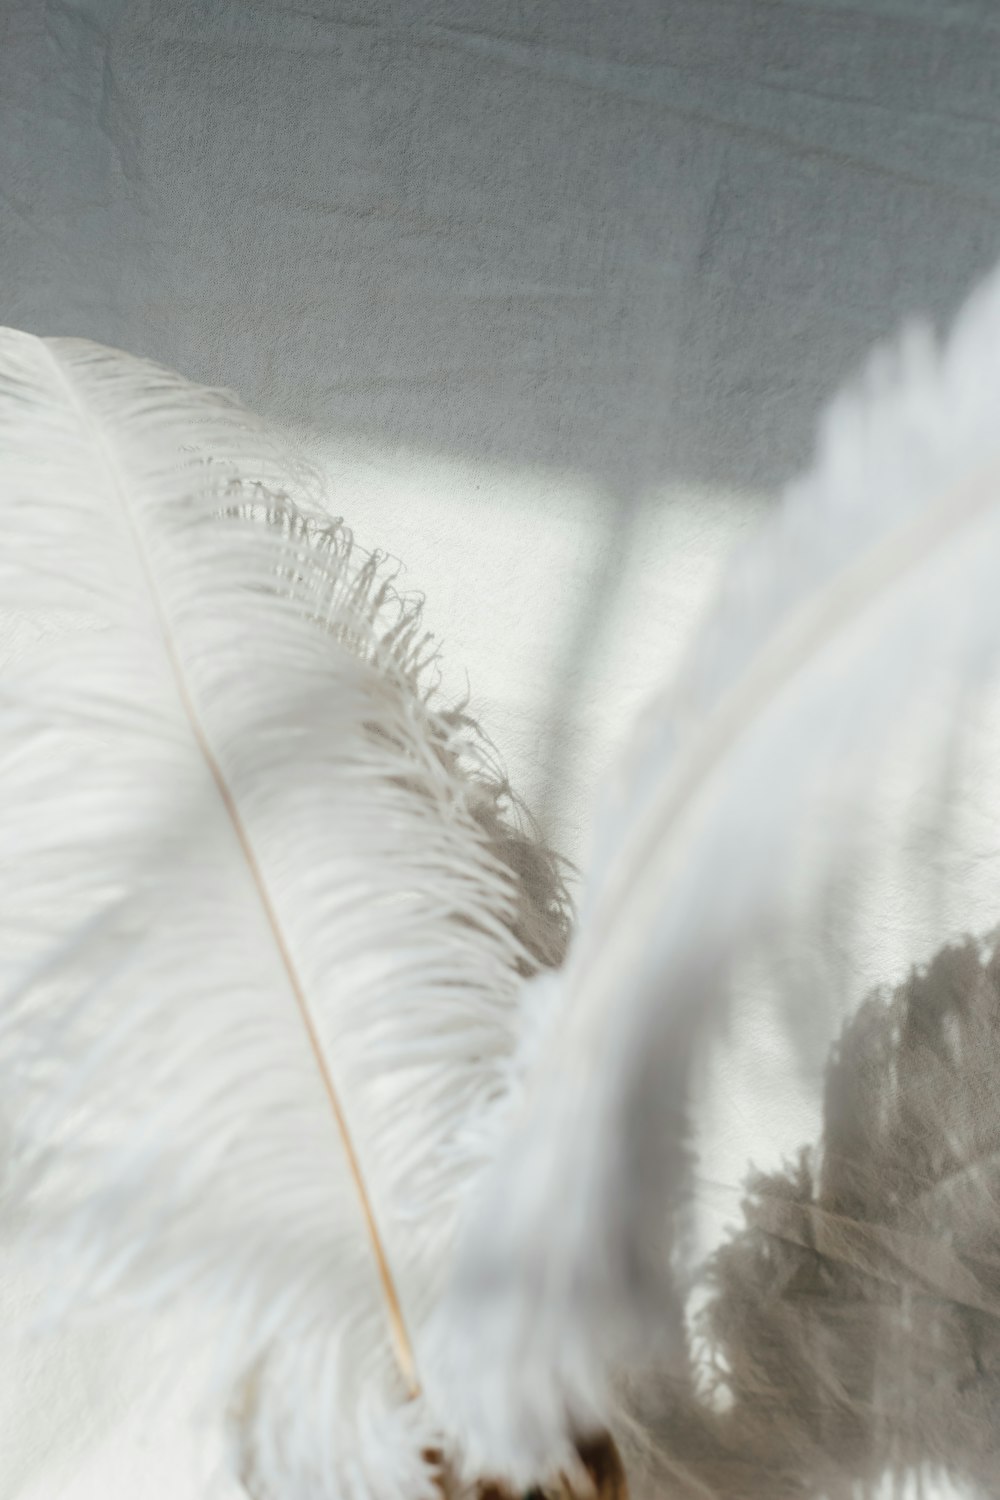 white feather on white textile